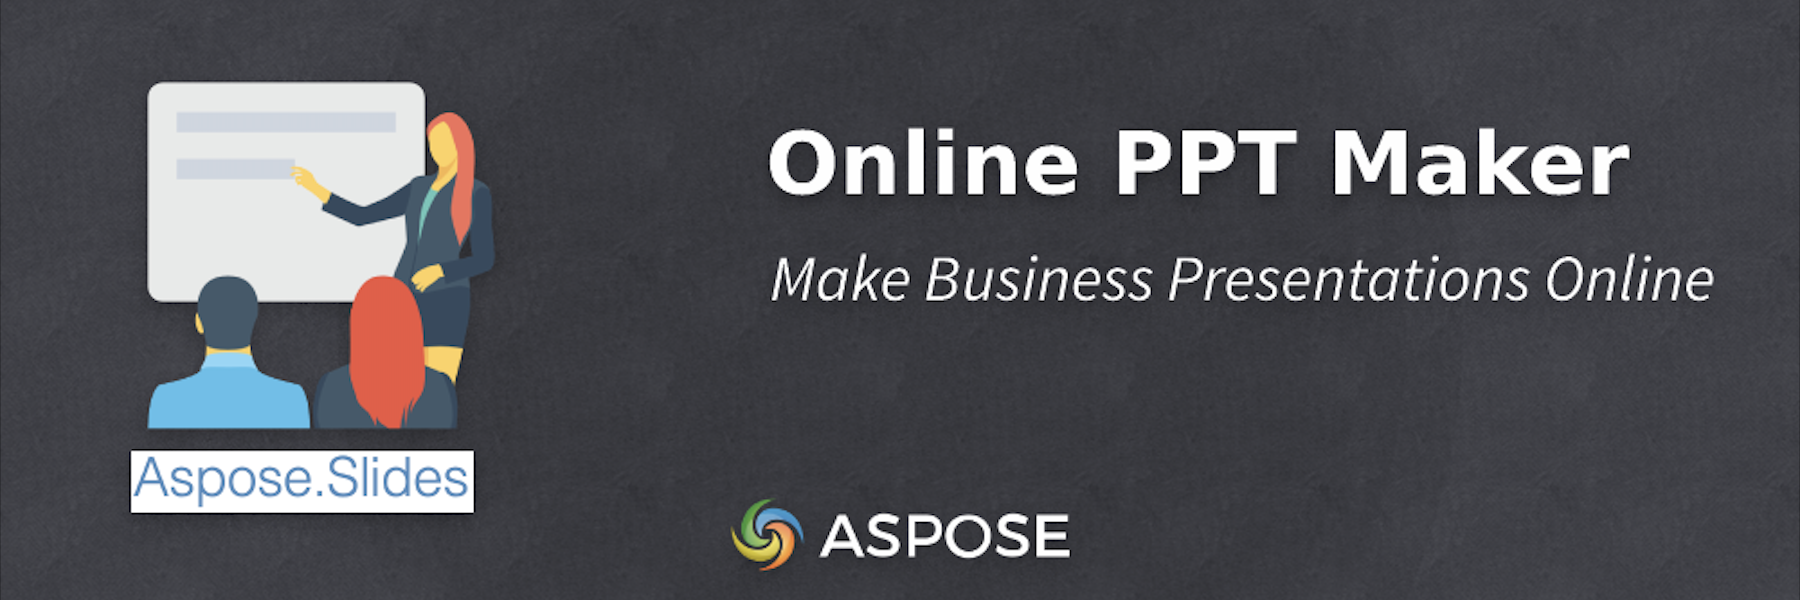 オンライン PPT メーカー - ビジネス プレゼンテーションをオンラインで作成